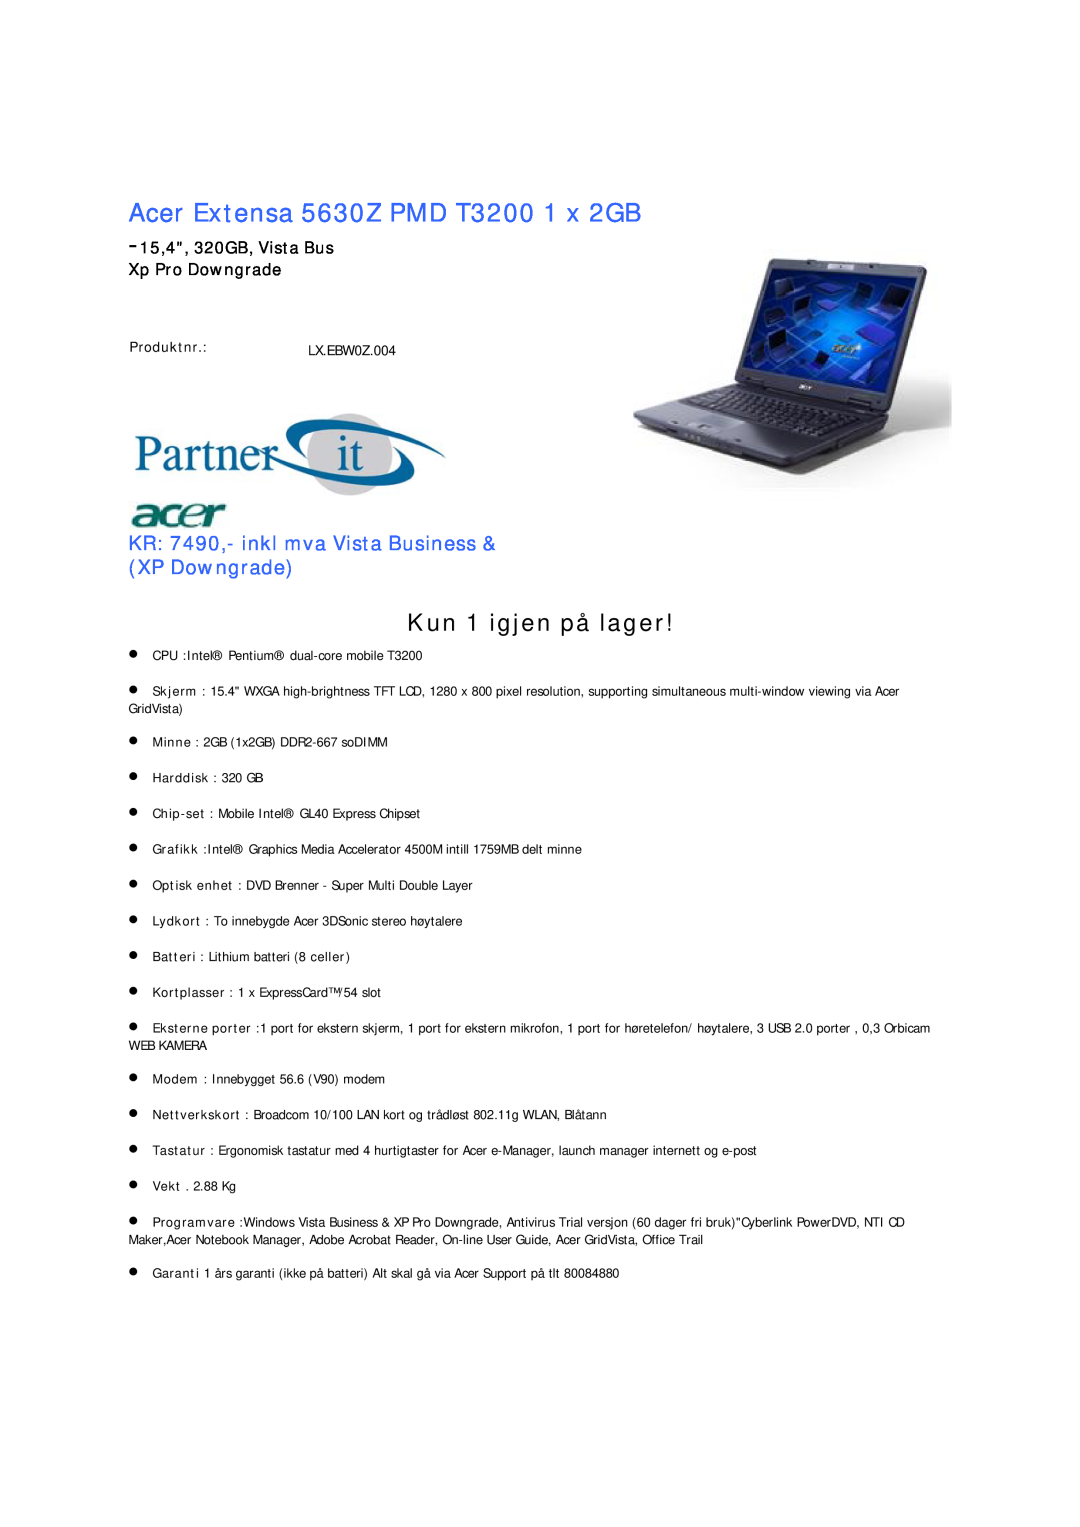 Acer 5735Z PMD T3400 Acer Extensa 5630Z PMD T3200 1 x 2GB, 15,4, 320GB, Vista Bus Xp Pro Downgrade, Produktnr.LX.EBW0Z.004 